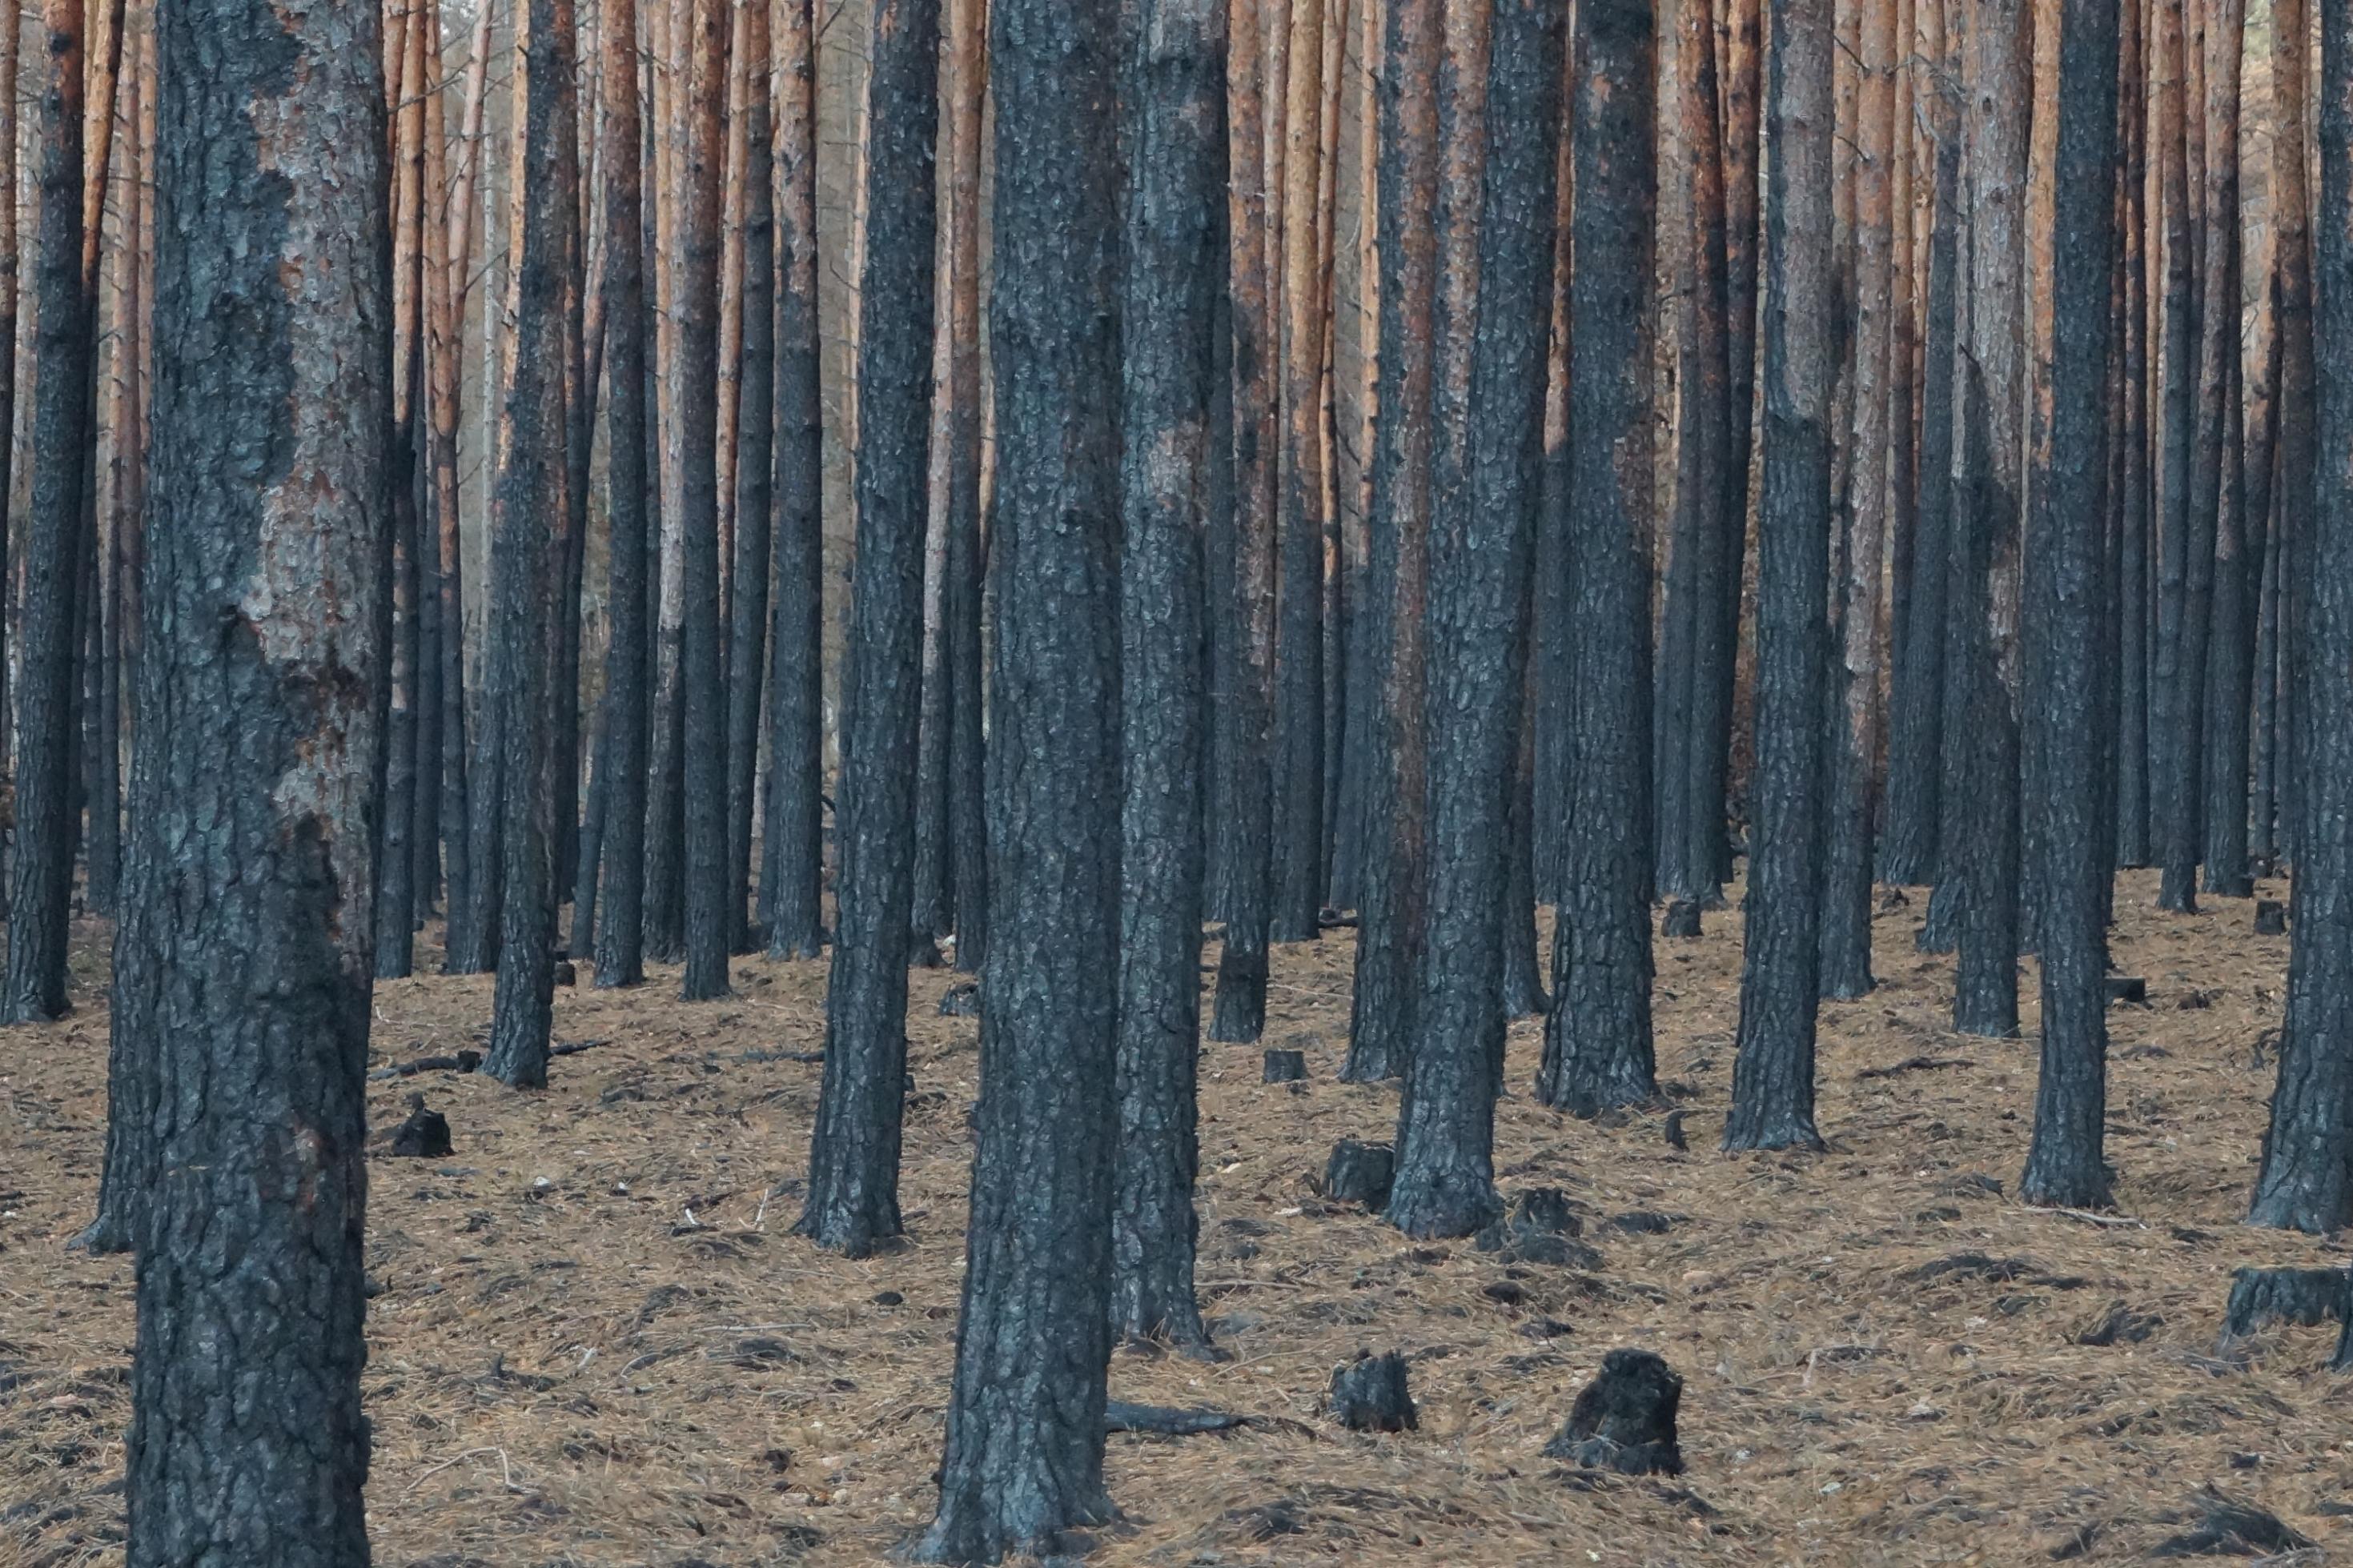 Verkohlte Baumstämme nach dem Brand in einem Wald in Treuenbrietzen (Brandenburg)